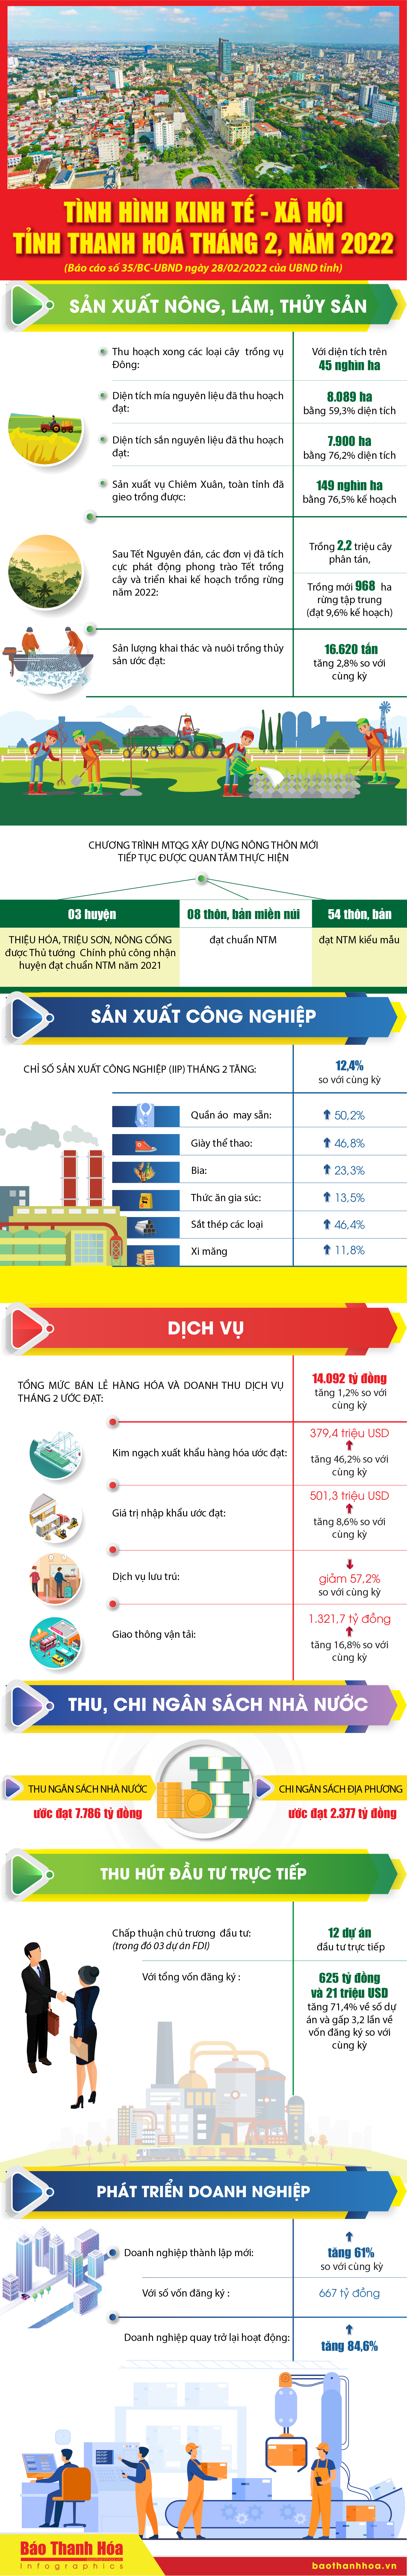 [Infographic] - Tình hình kinh tế - xã hội tỉnh Thanh Hóa tháng 2-2022